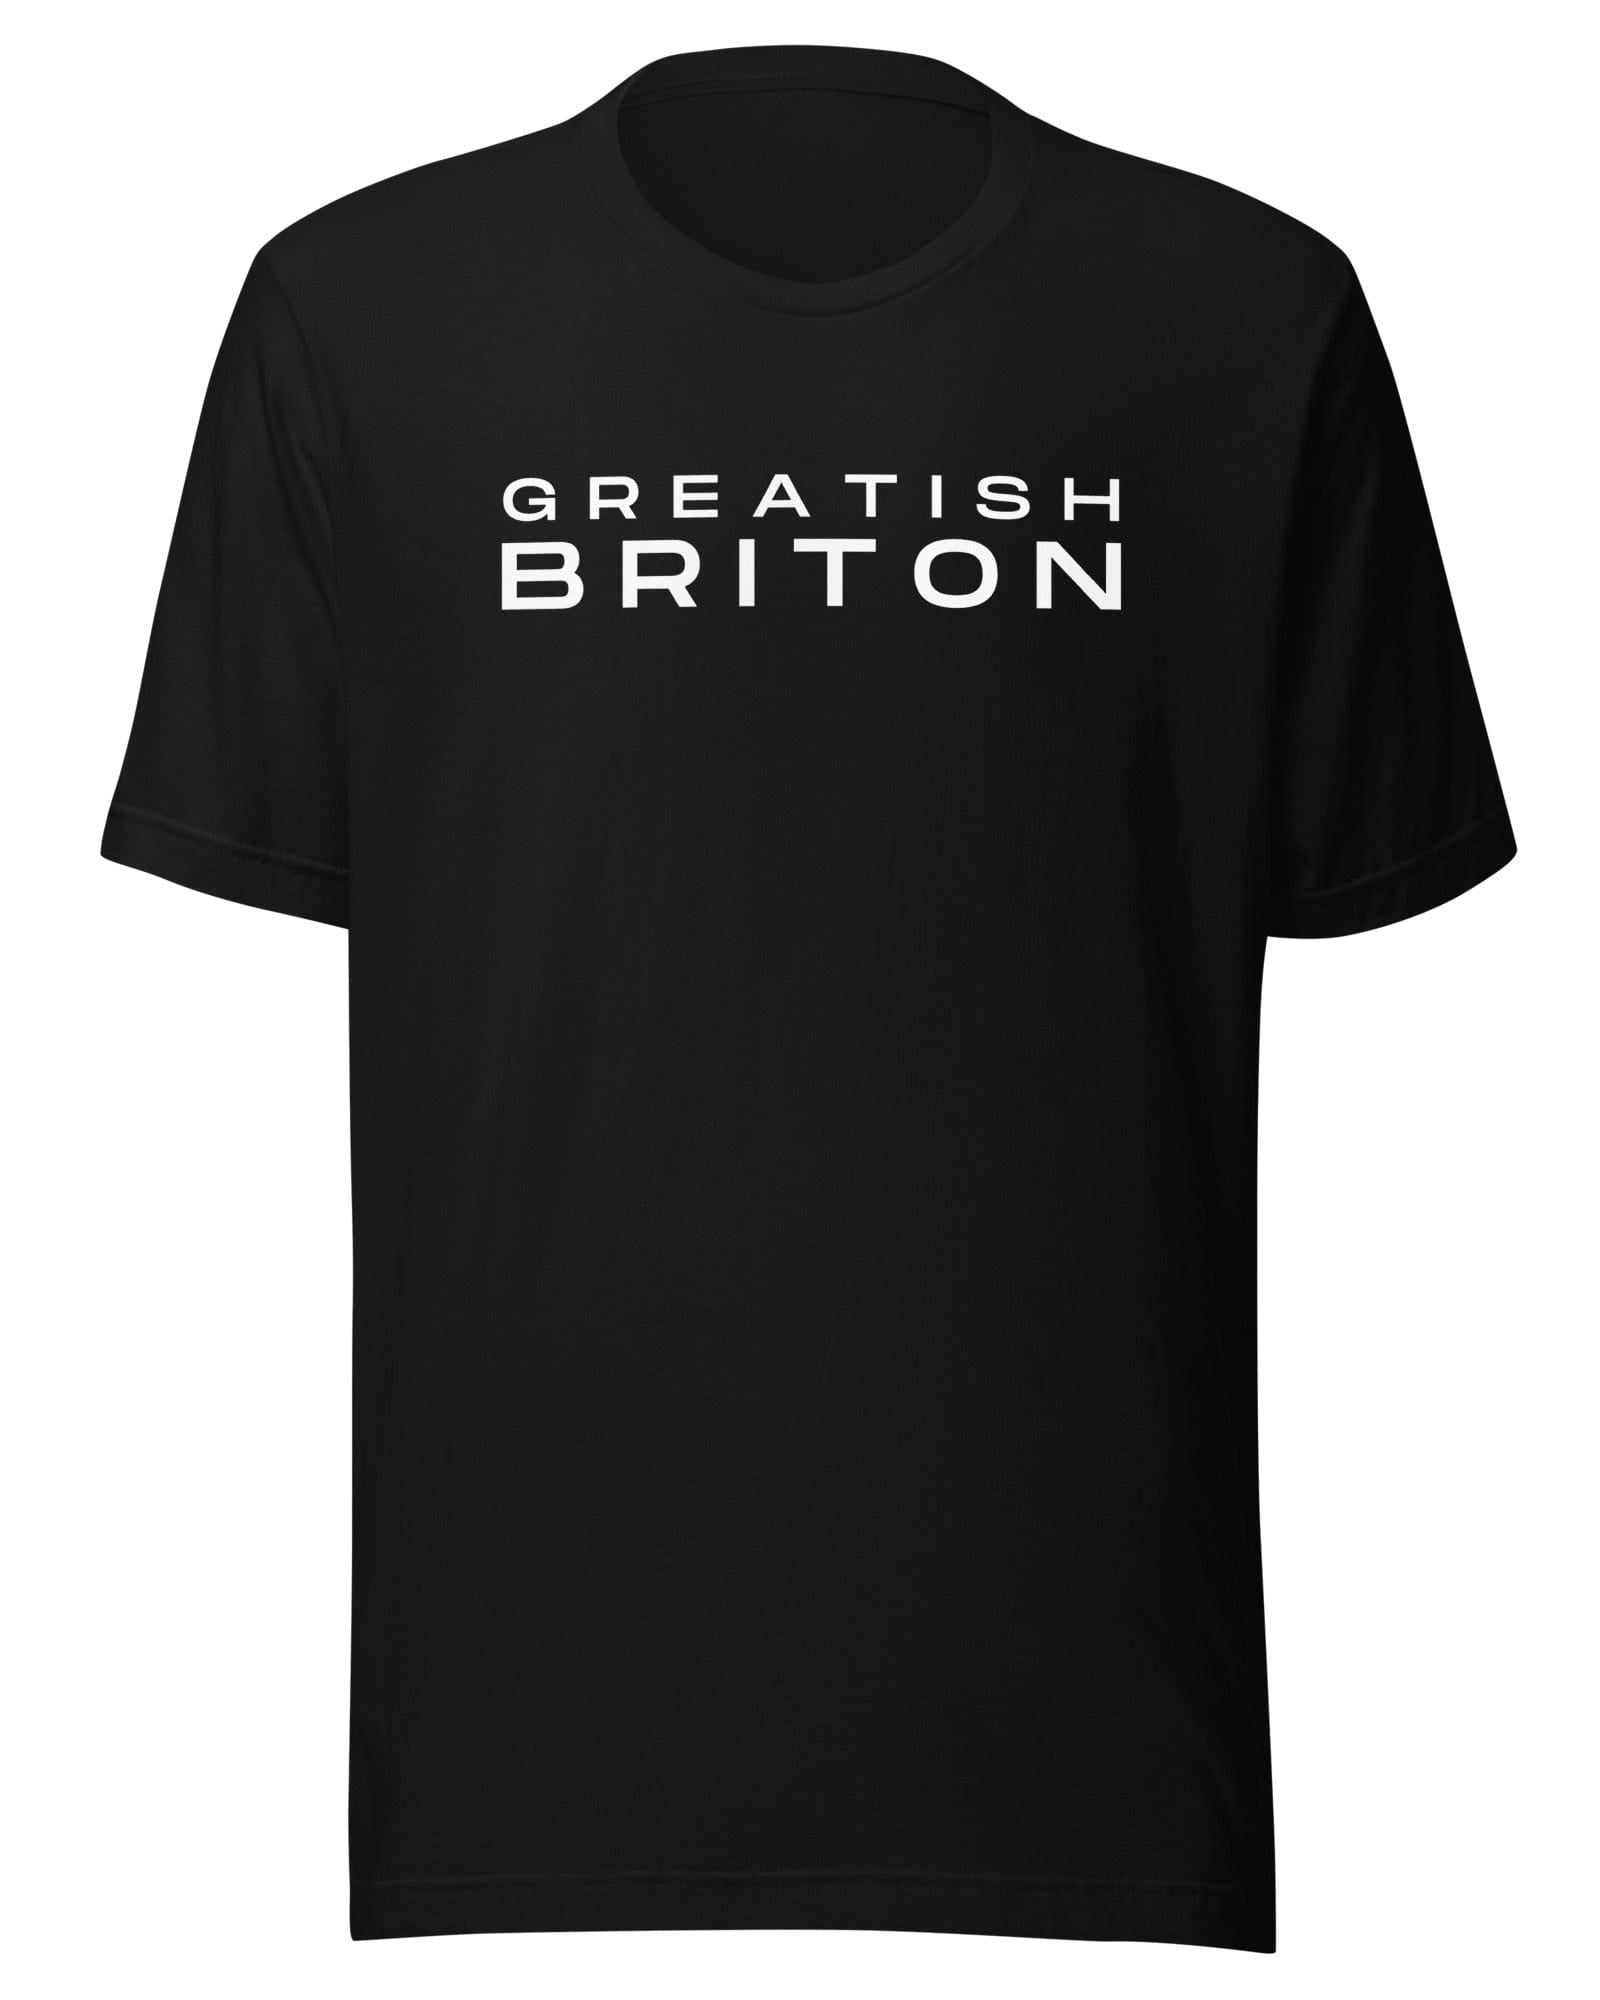 Greatish Briton T-shirt Black / S Shirts & Tops Jolly & Goode